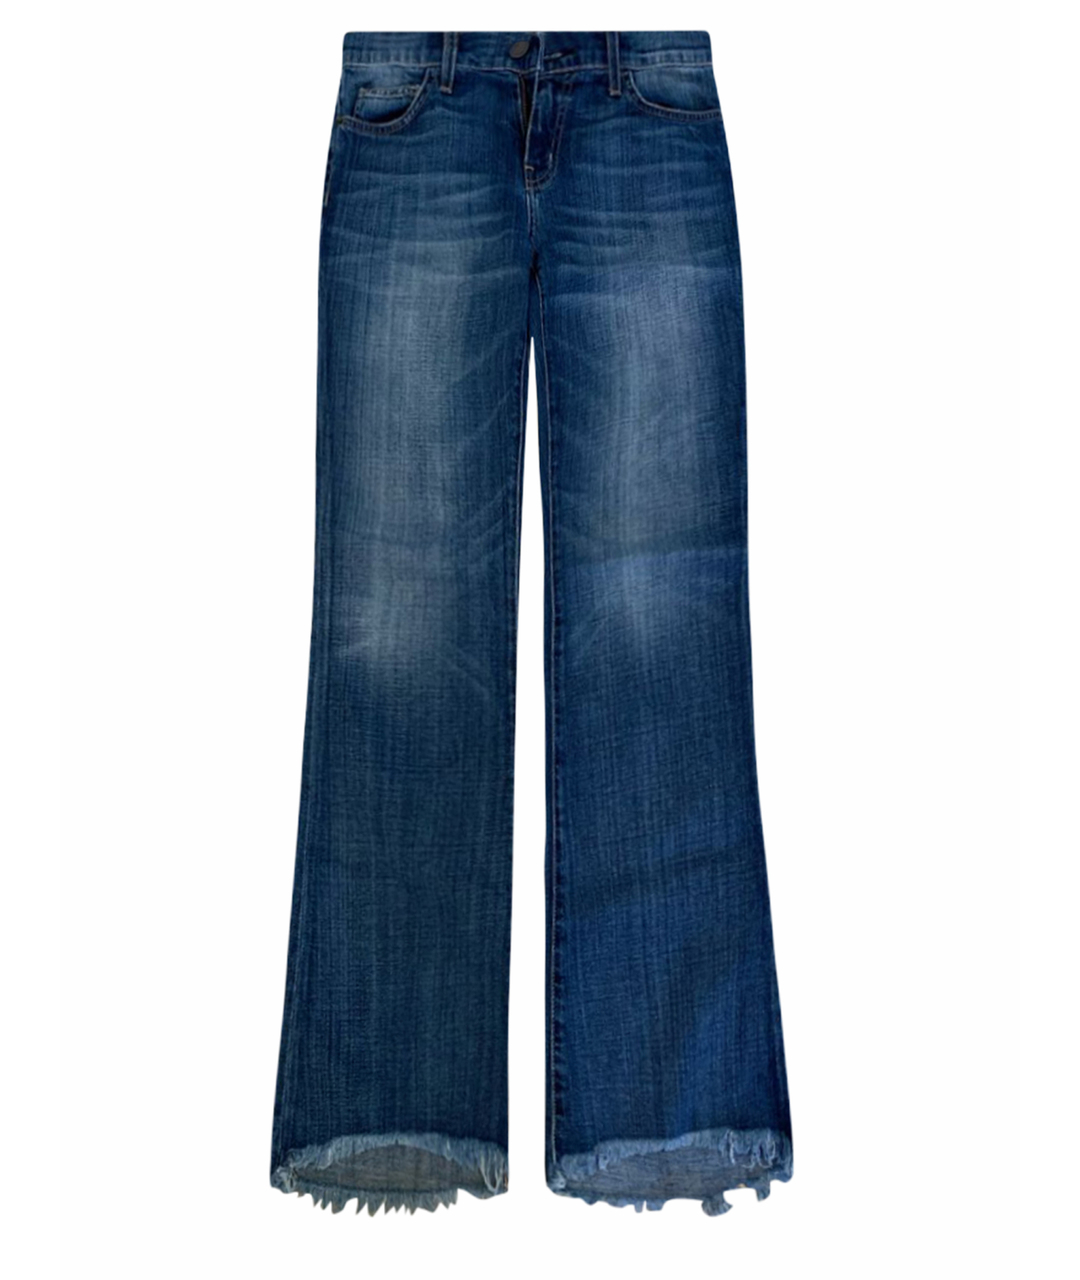 CURRENT/ELLIOTT Синие хлопковые джинсы клеш, фото 1